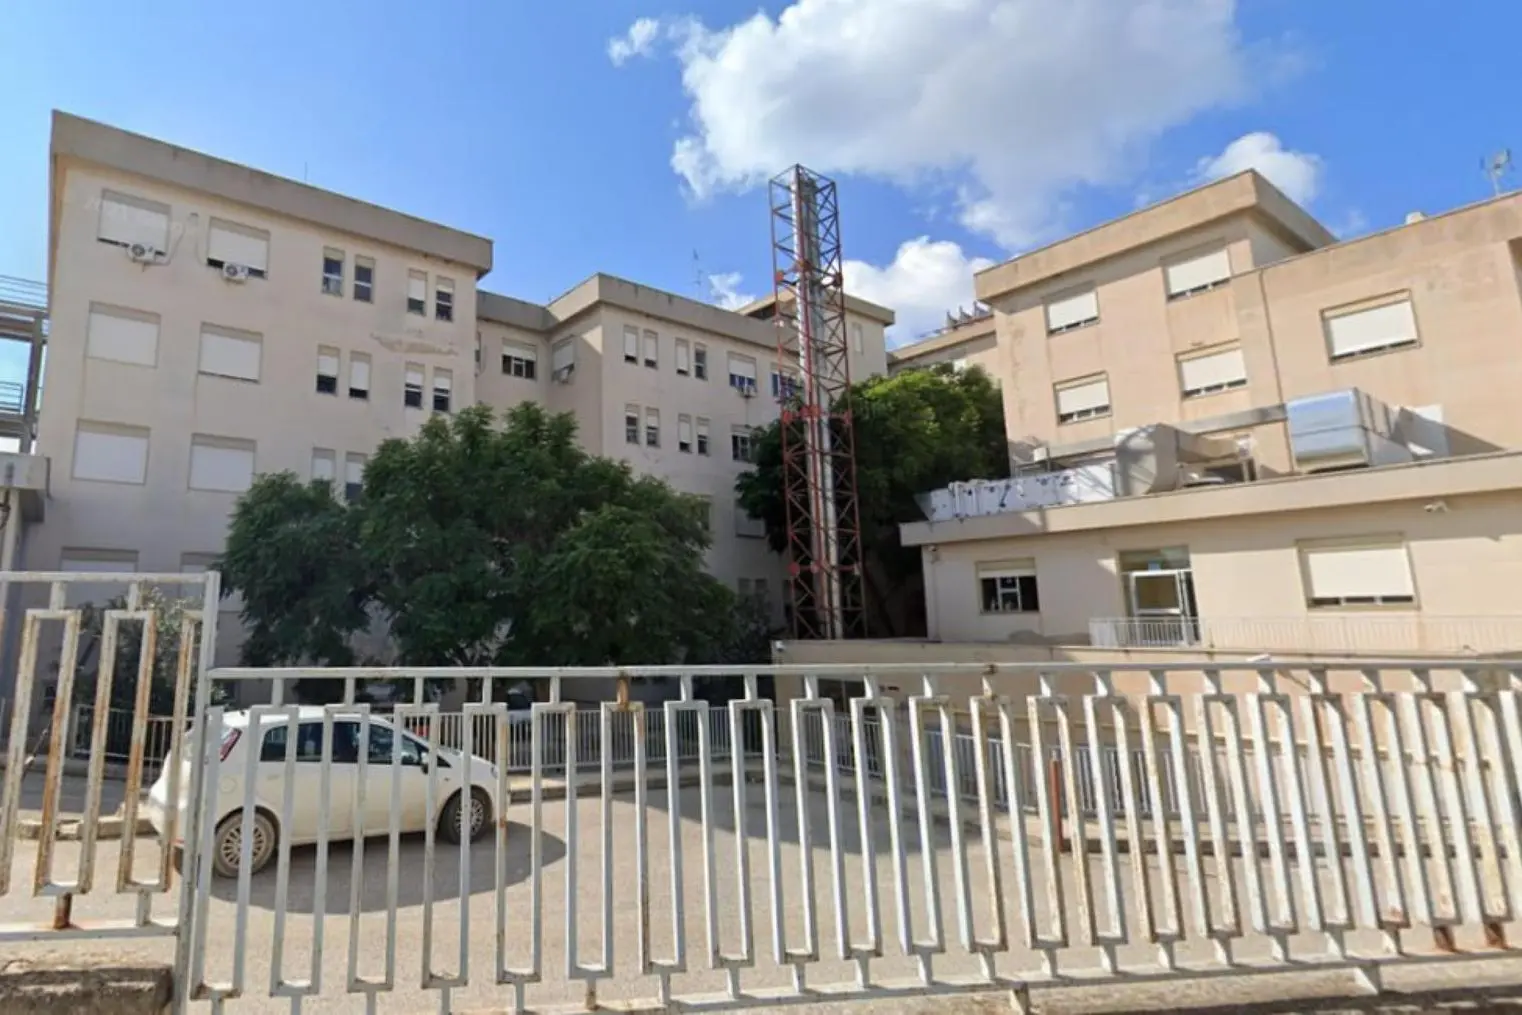 An external view of the hospital (Ansa)